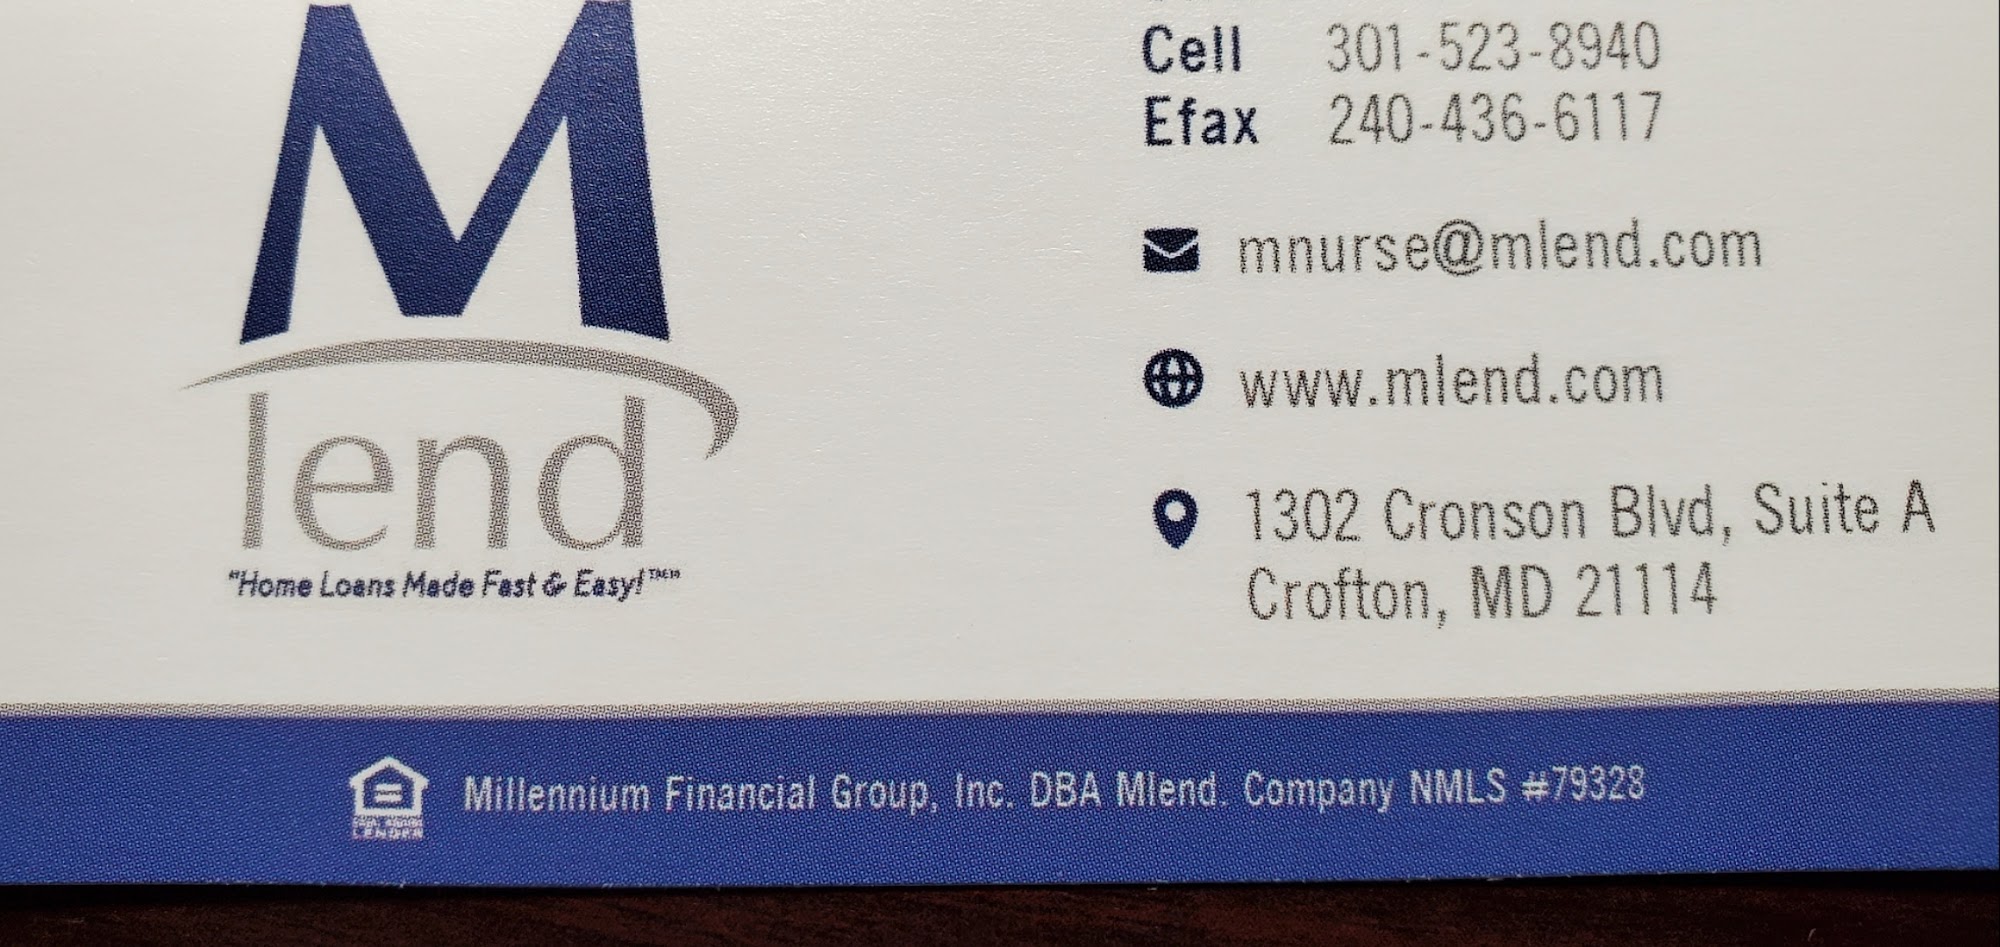 Mlend - Millennium Financial Group, Inc.